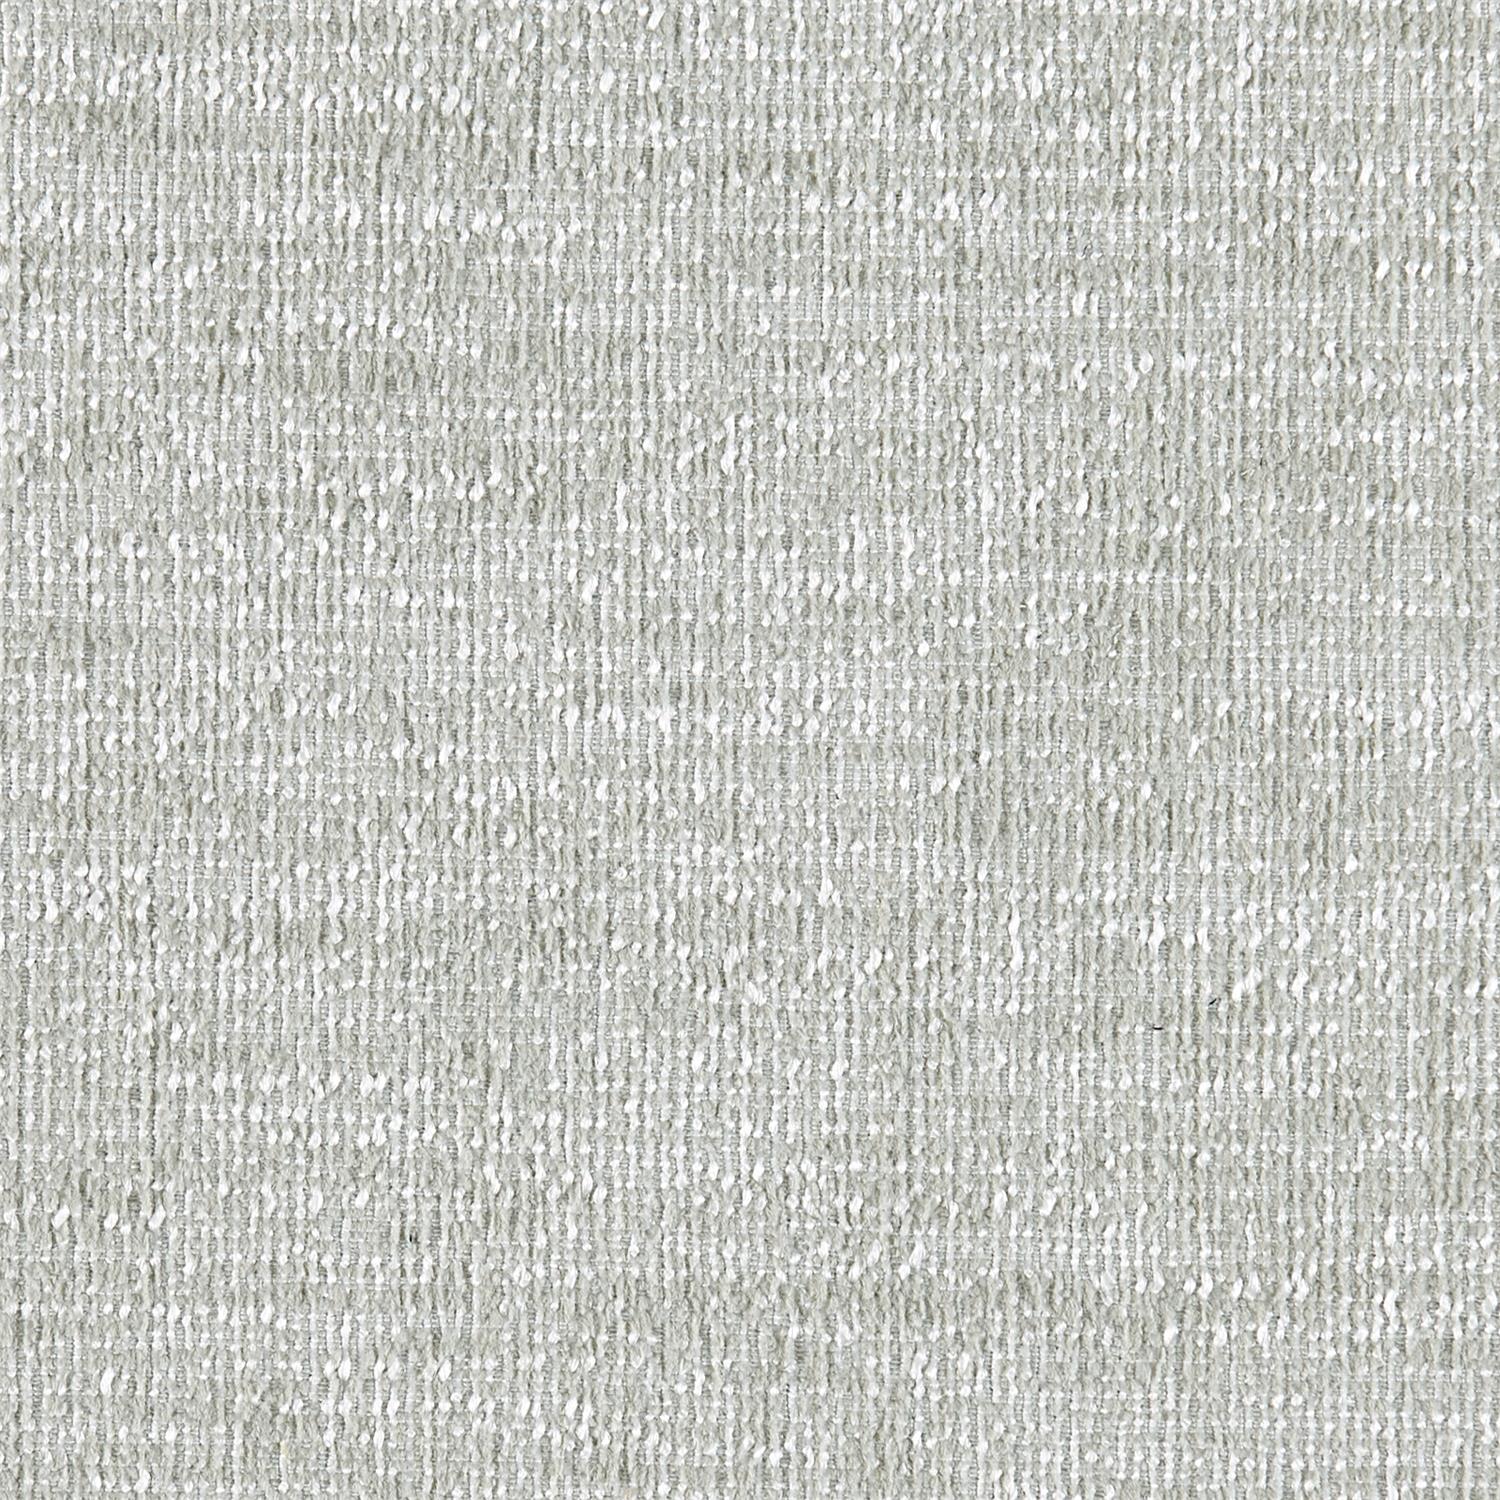 6067-013 Fabric